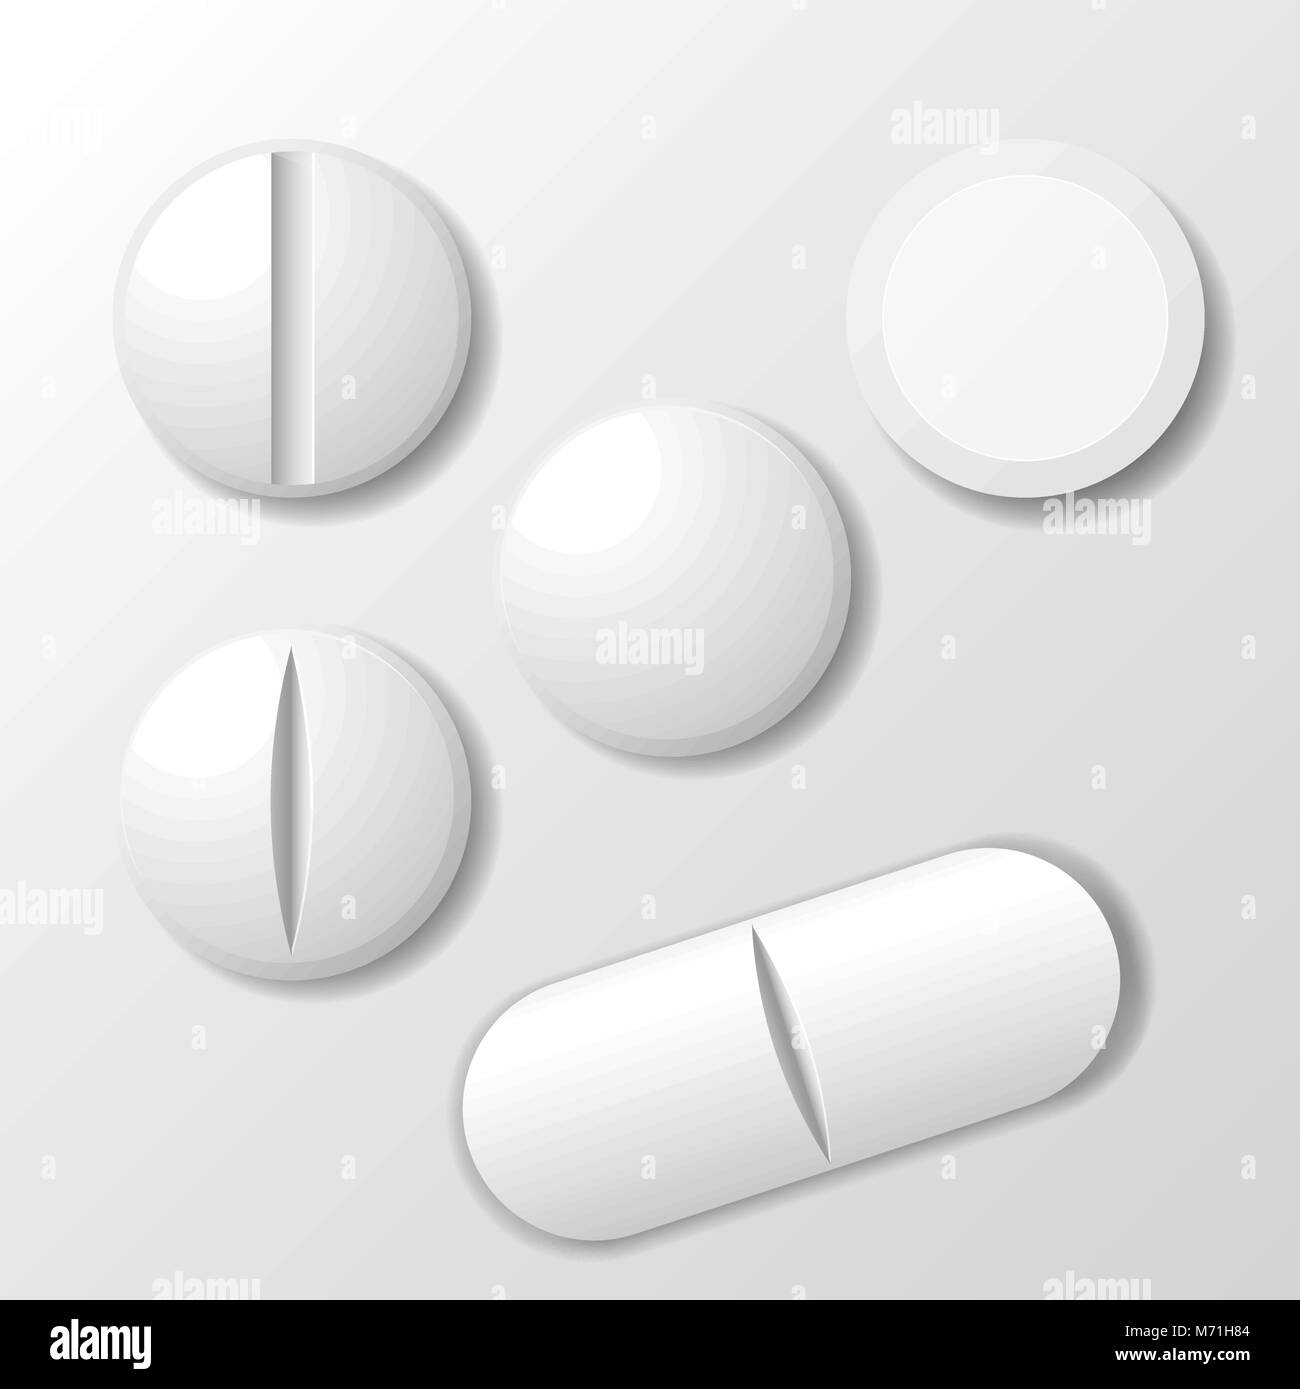 Einstellen der Medizin Pille - tablet Droge Stock Vektor